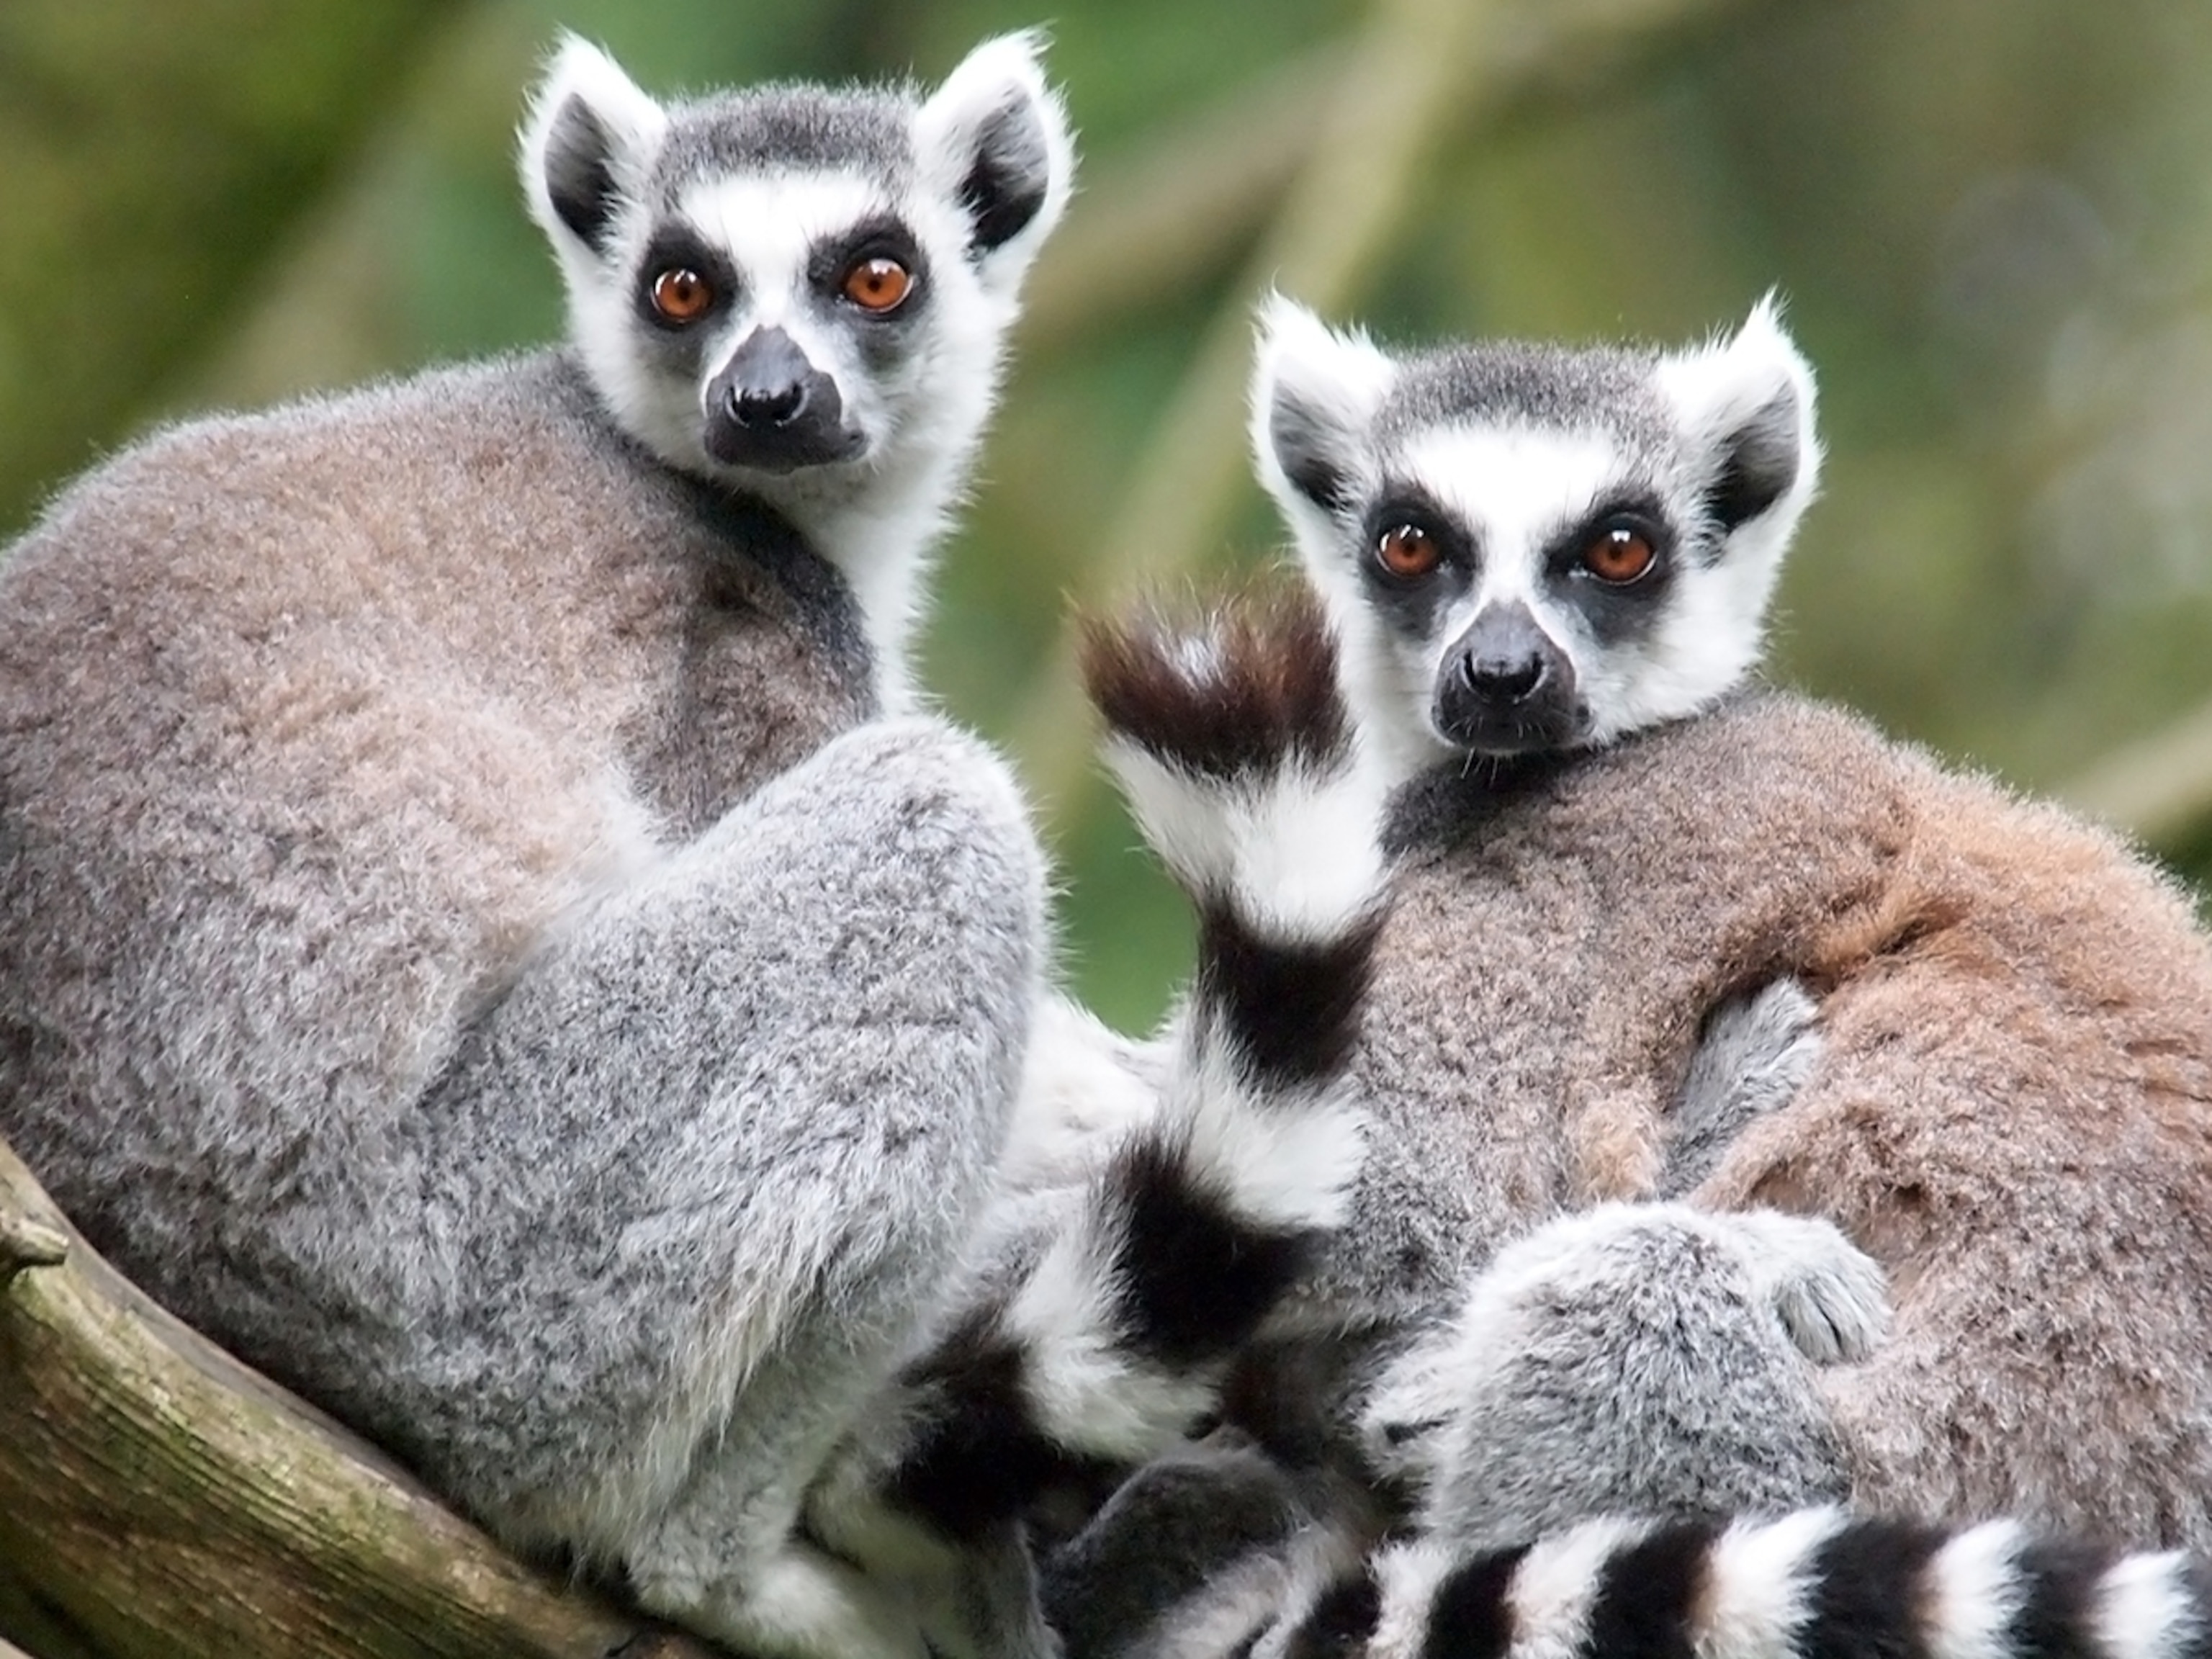 Pictures Of A Lemur - KibrisPDR